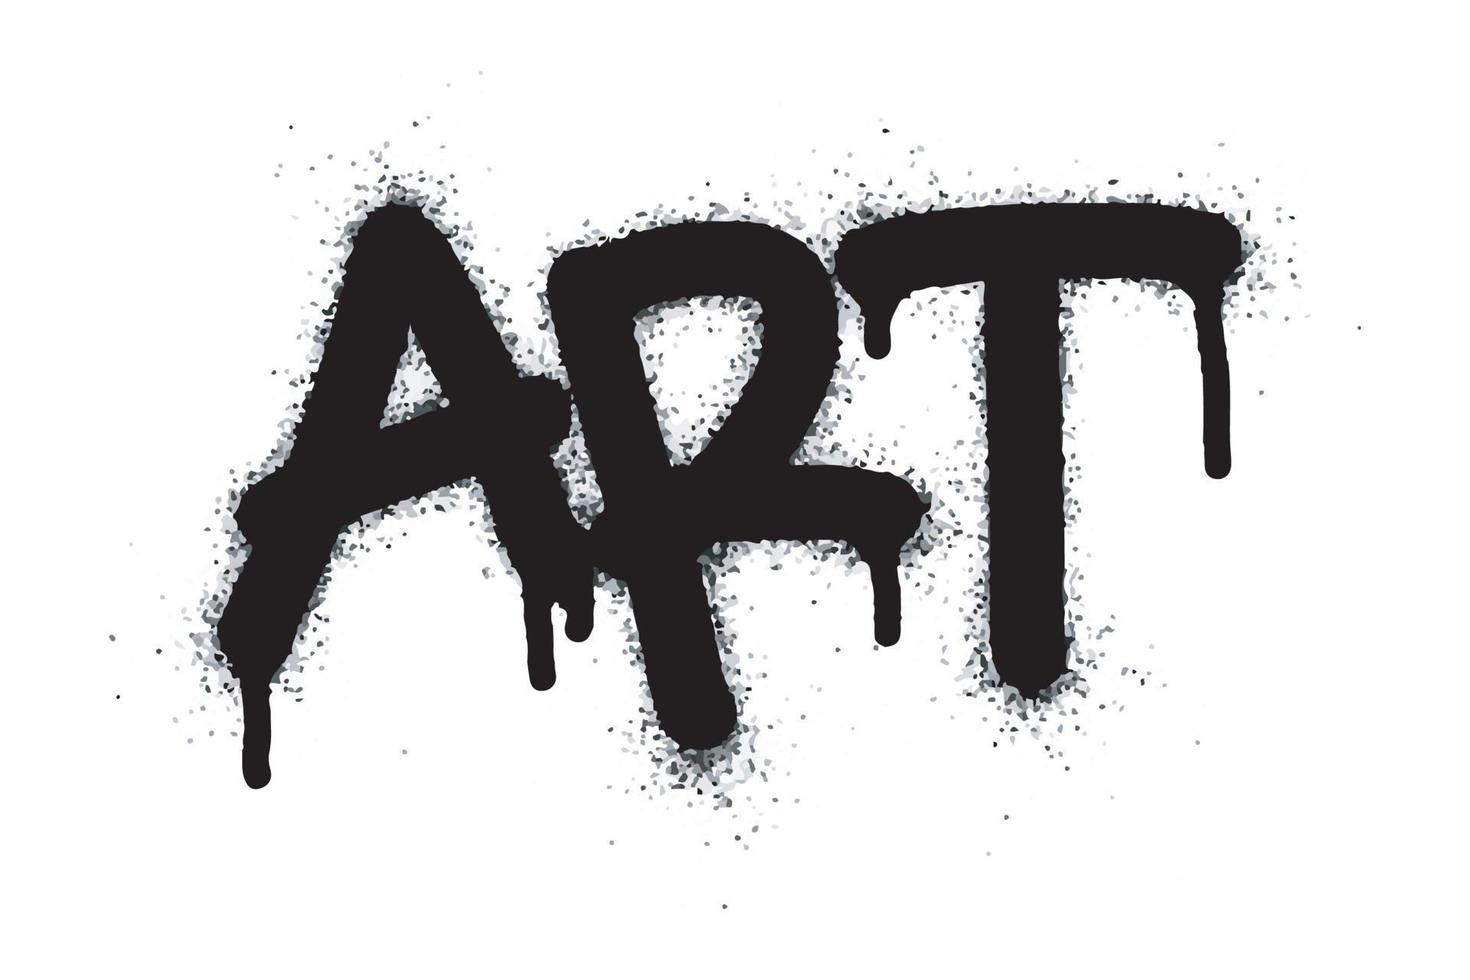 graffiti konst ord och symbol sprutas i svart vektor